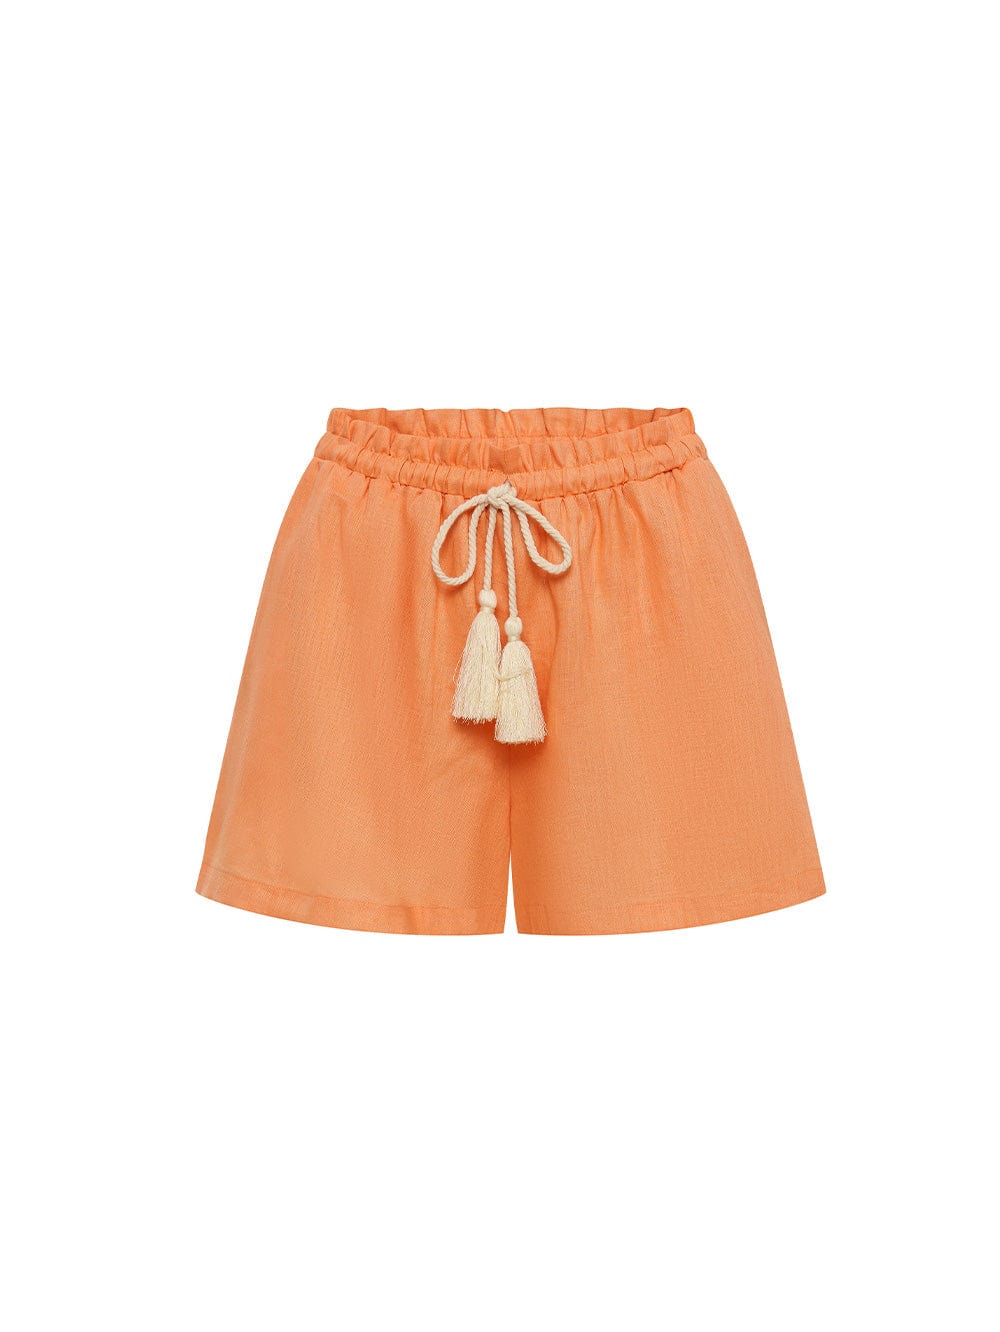 KIVARI Jacana Short | Orange Shorts